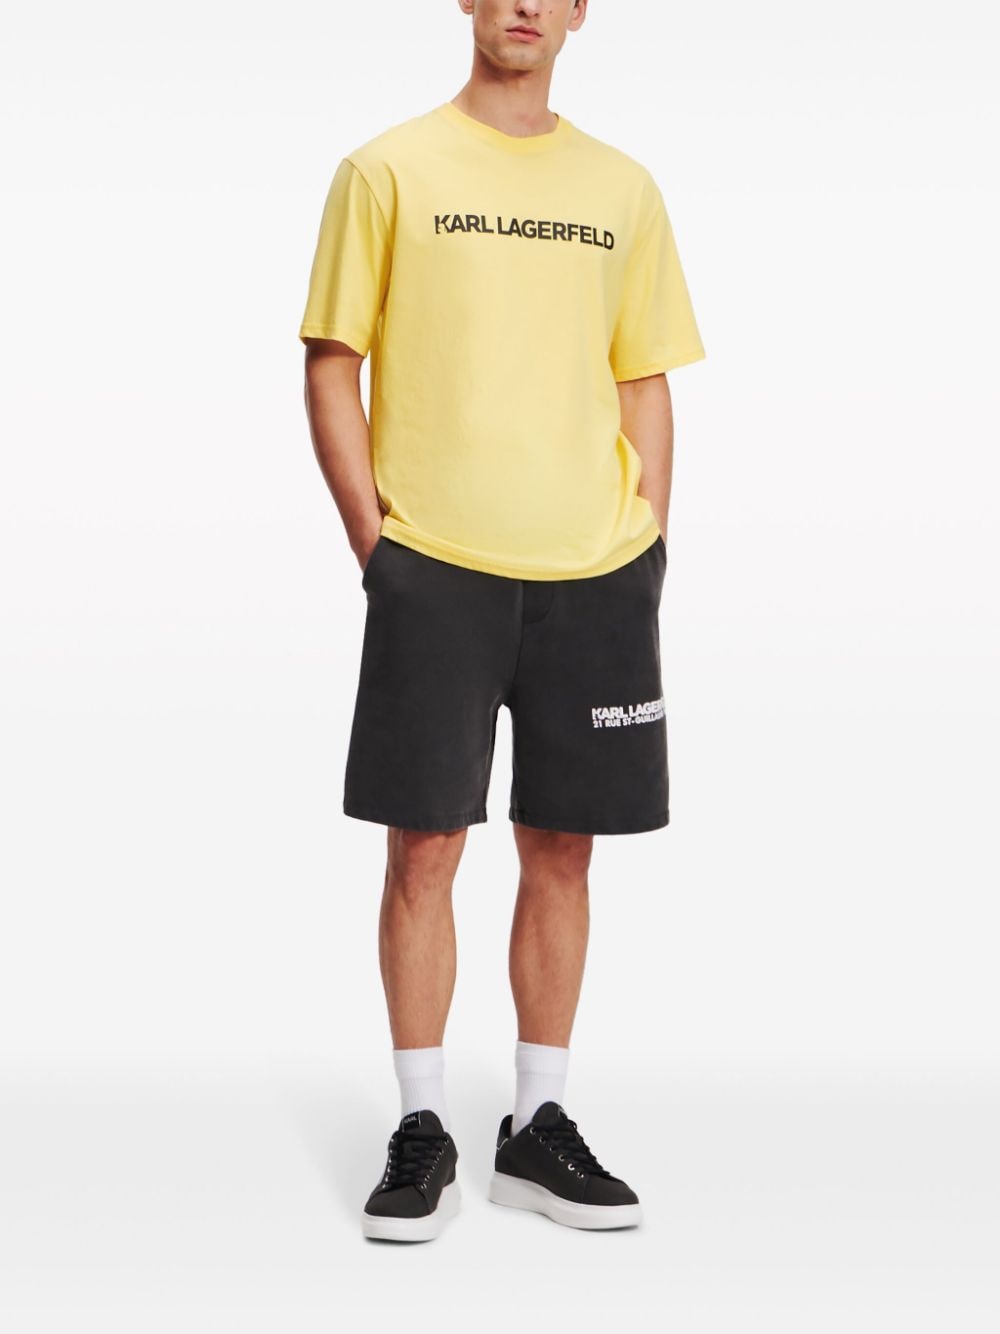 Karl Lagerfeld T-shirt met logo - Geel